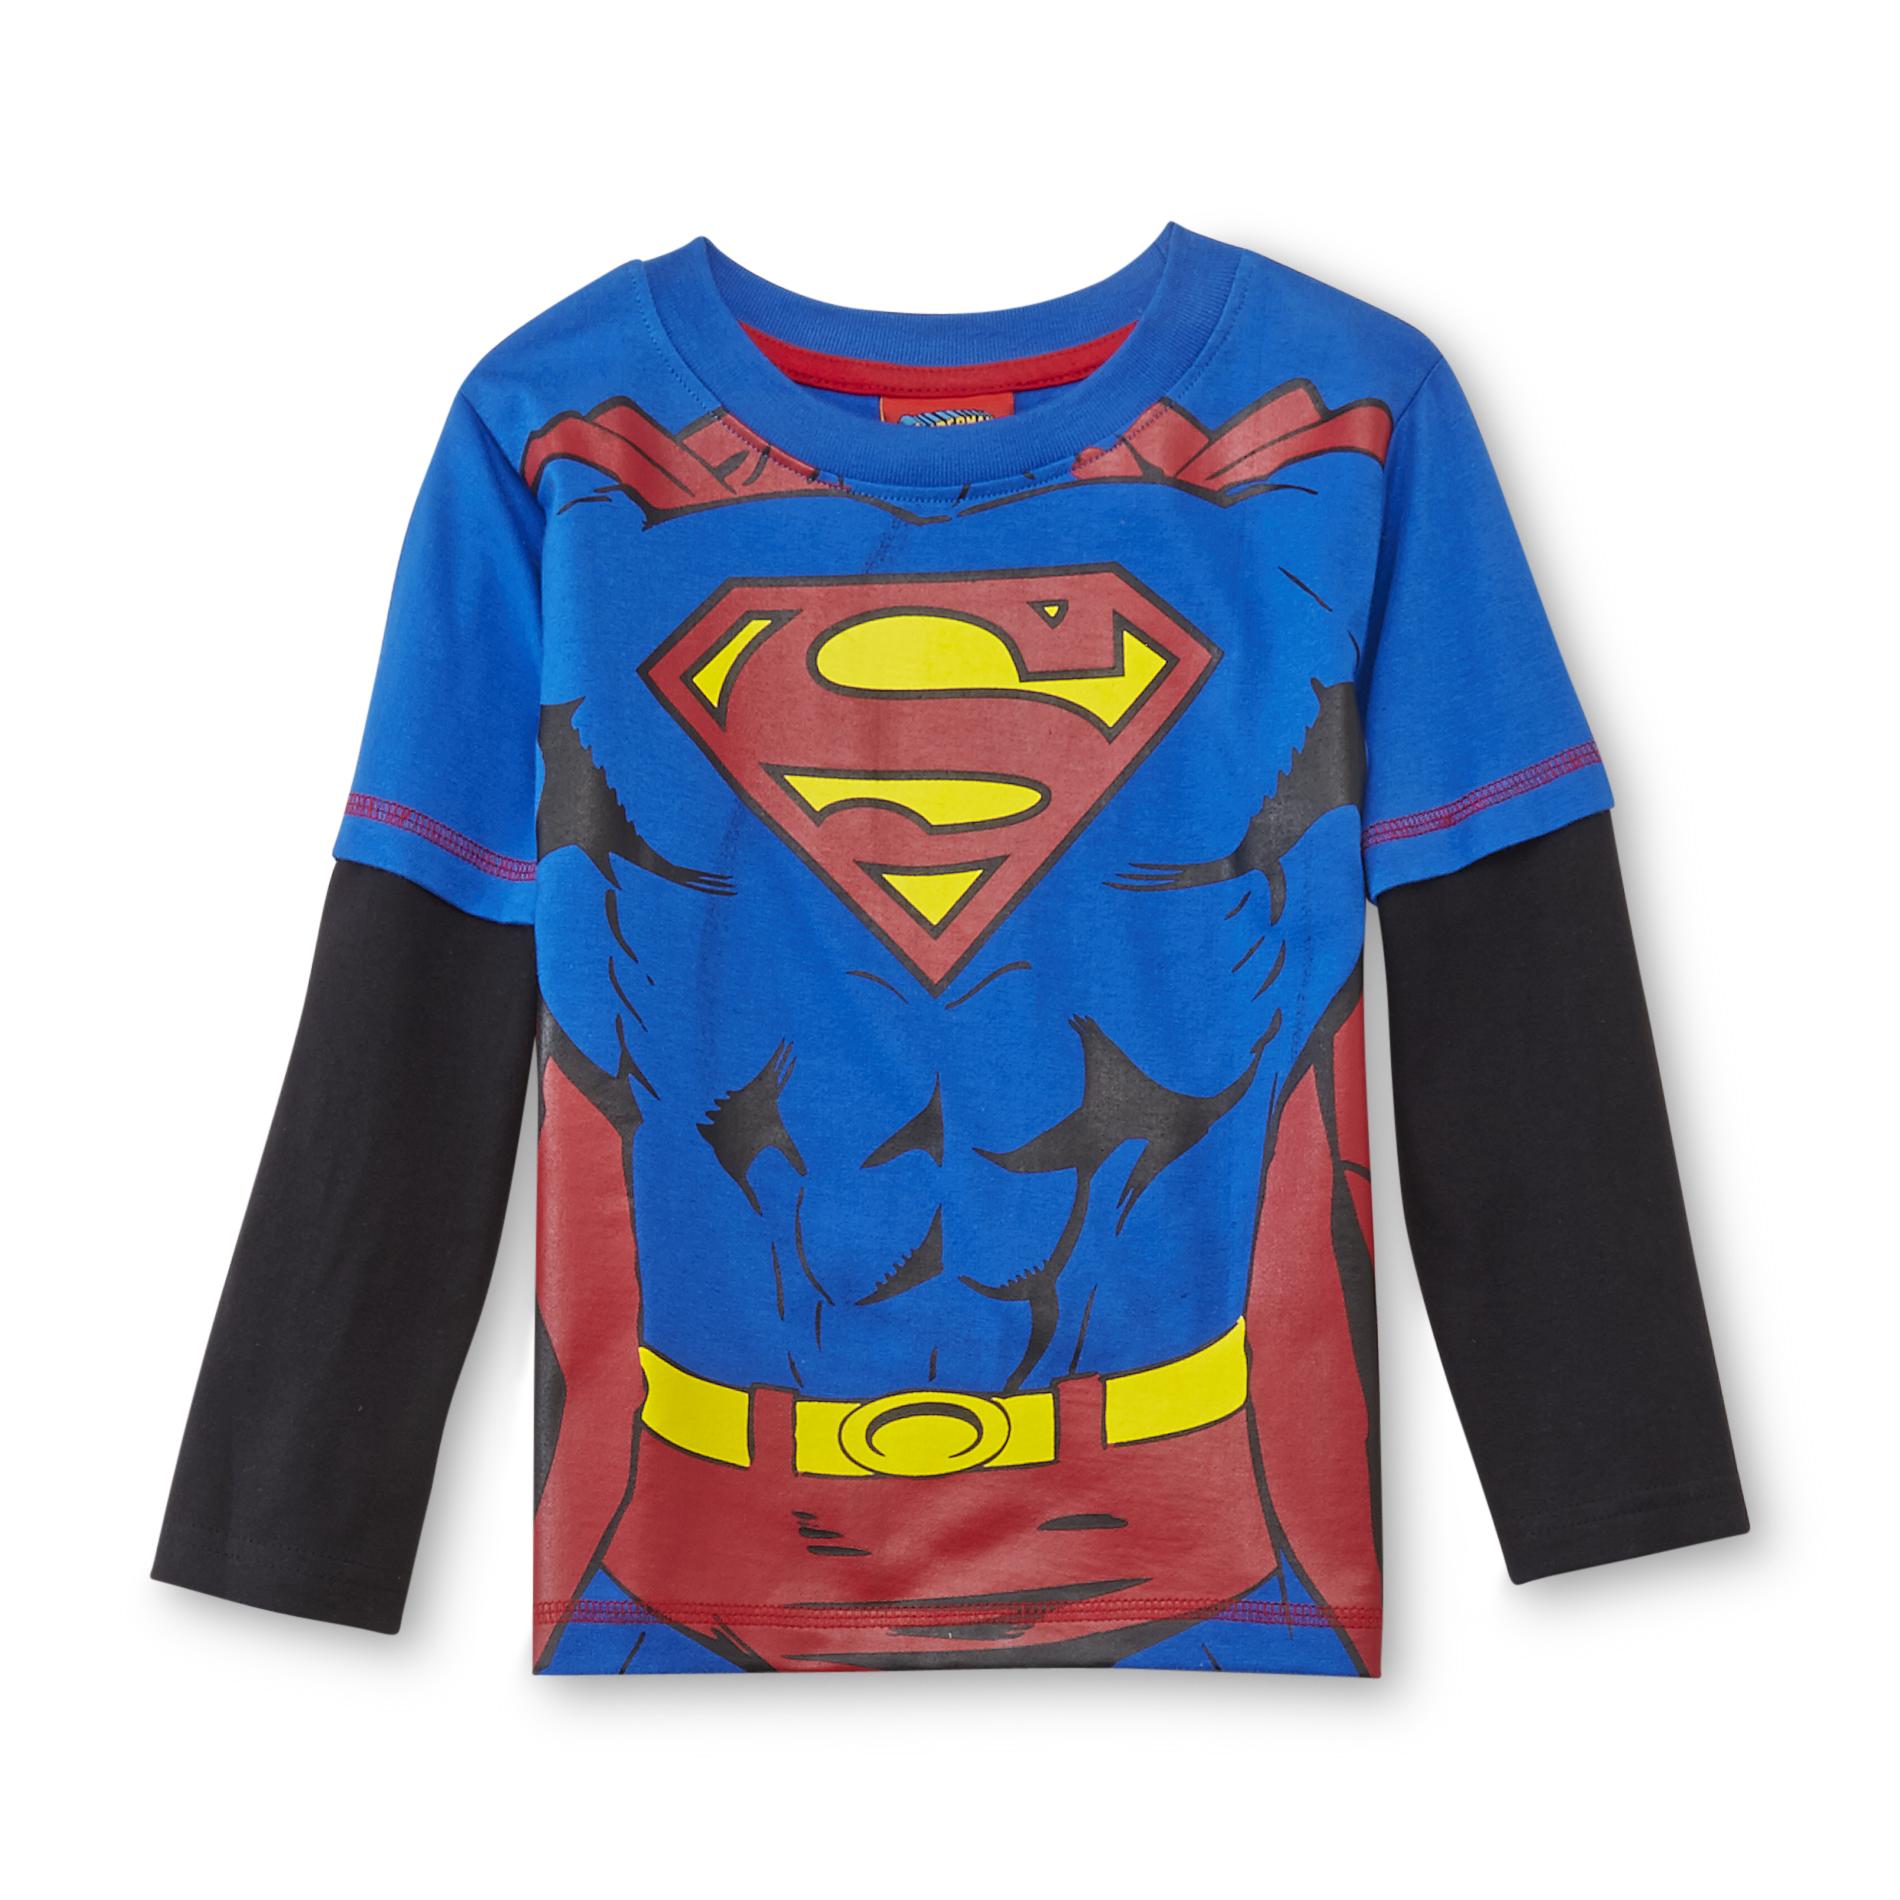 DC Comics Toddler Boy's Layered-Look Graphic Shirt - Superman